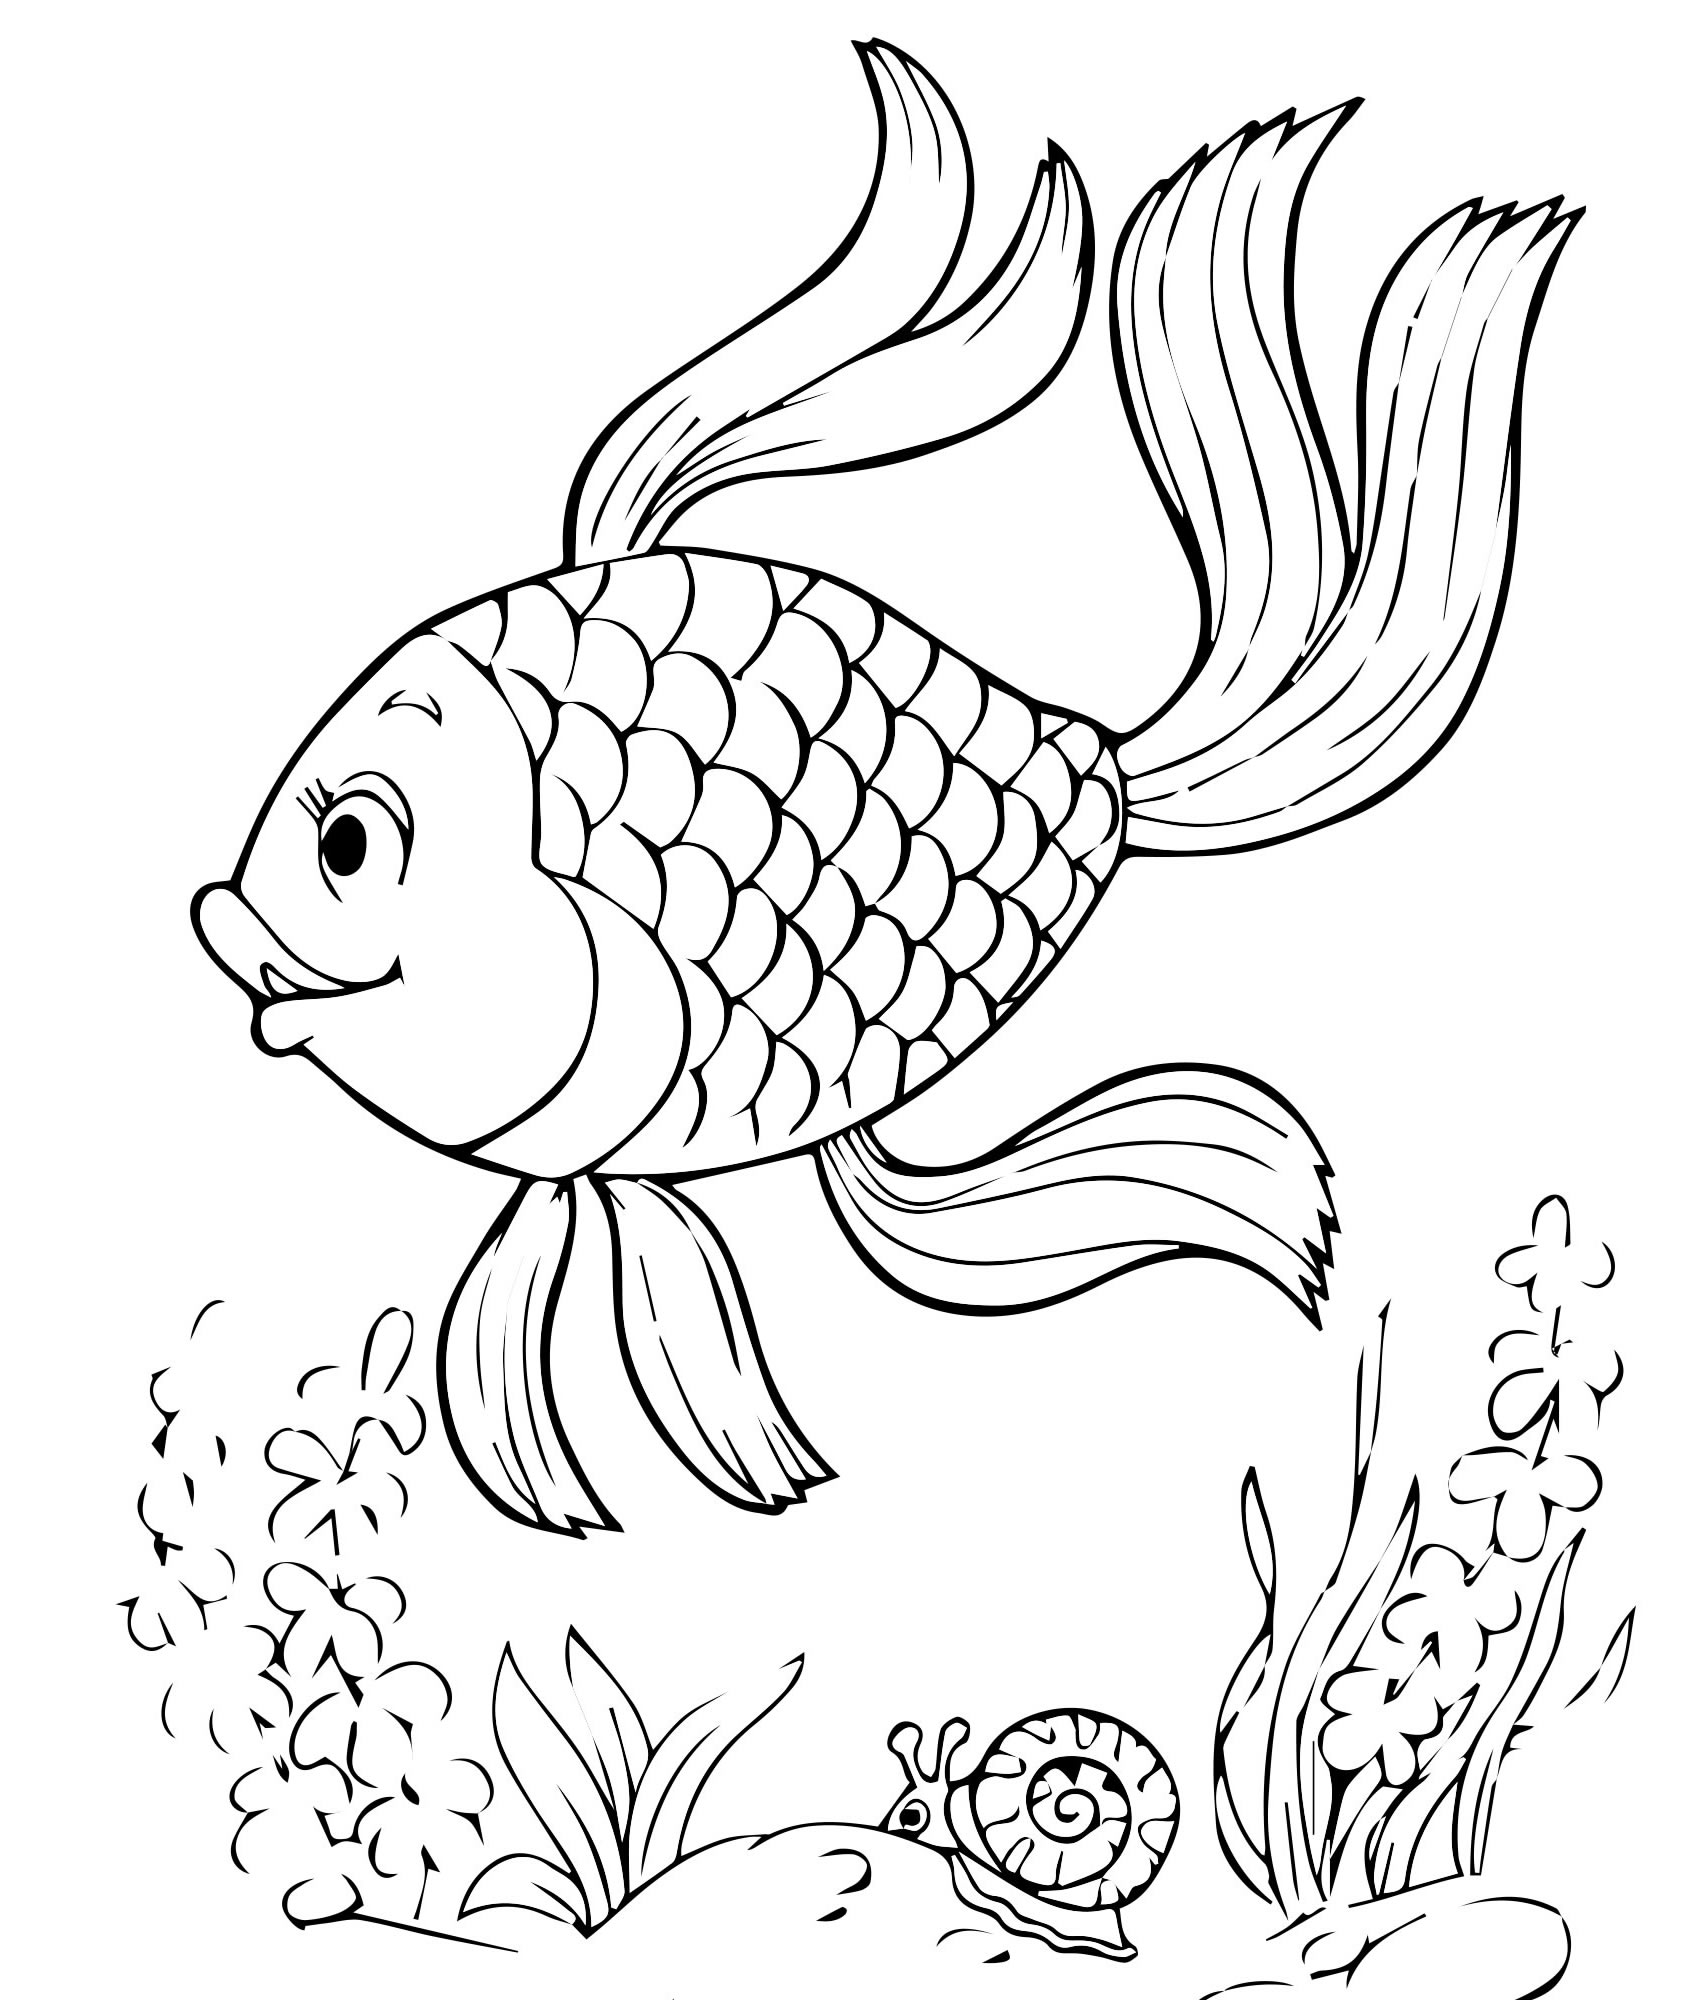 Игра-раскраска «Золотая рыбка» для раскрашивания онлайн